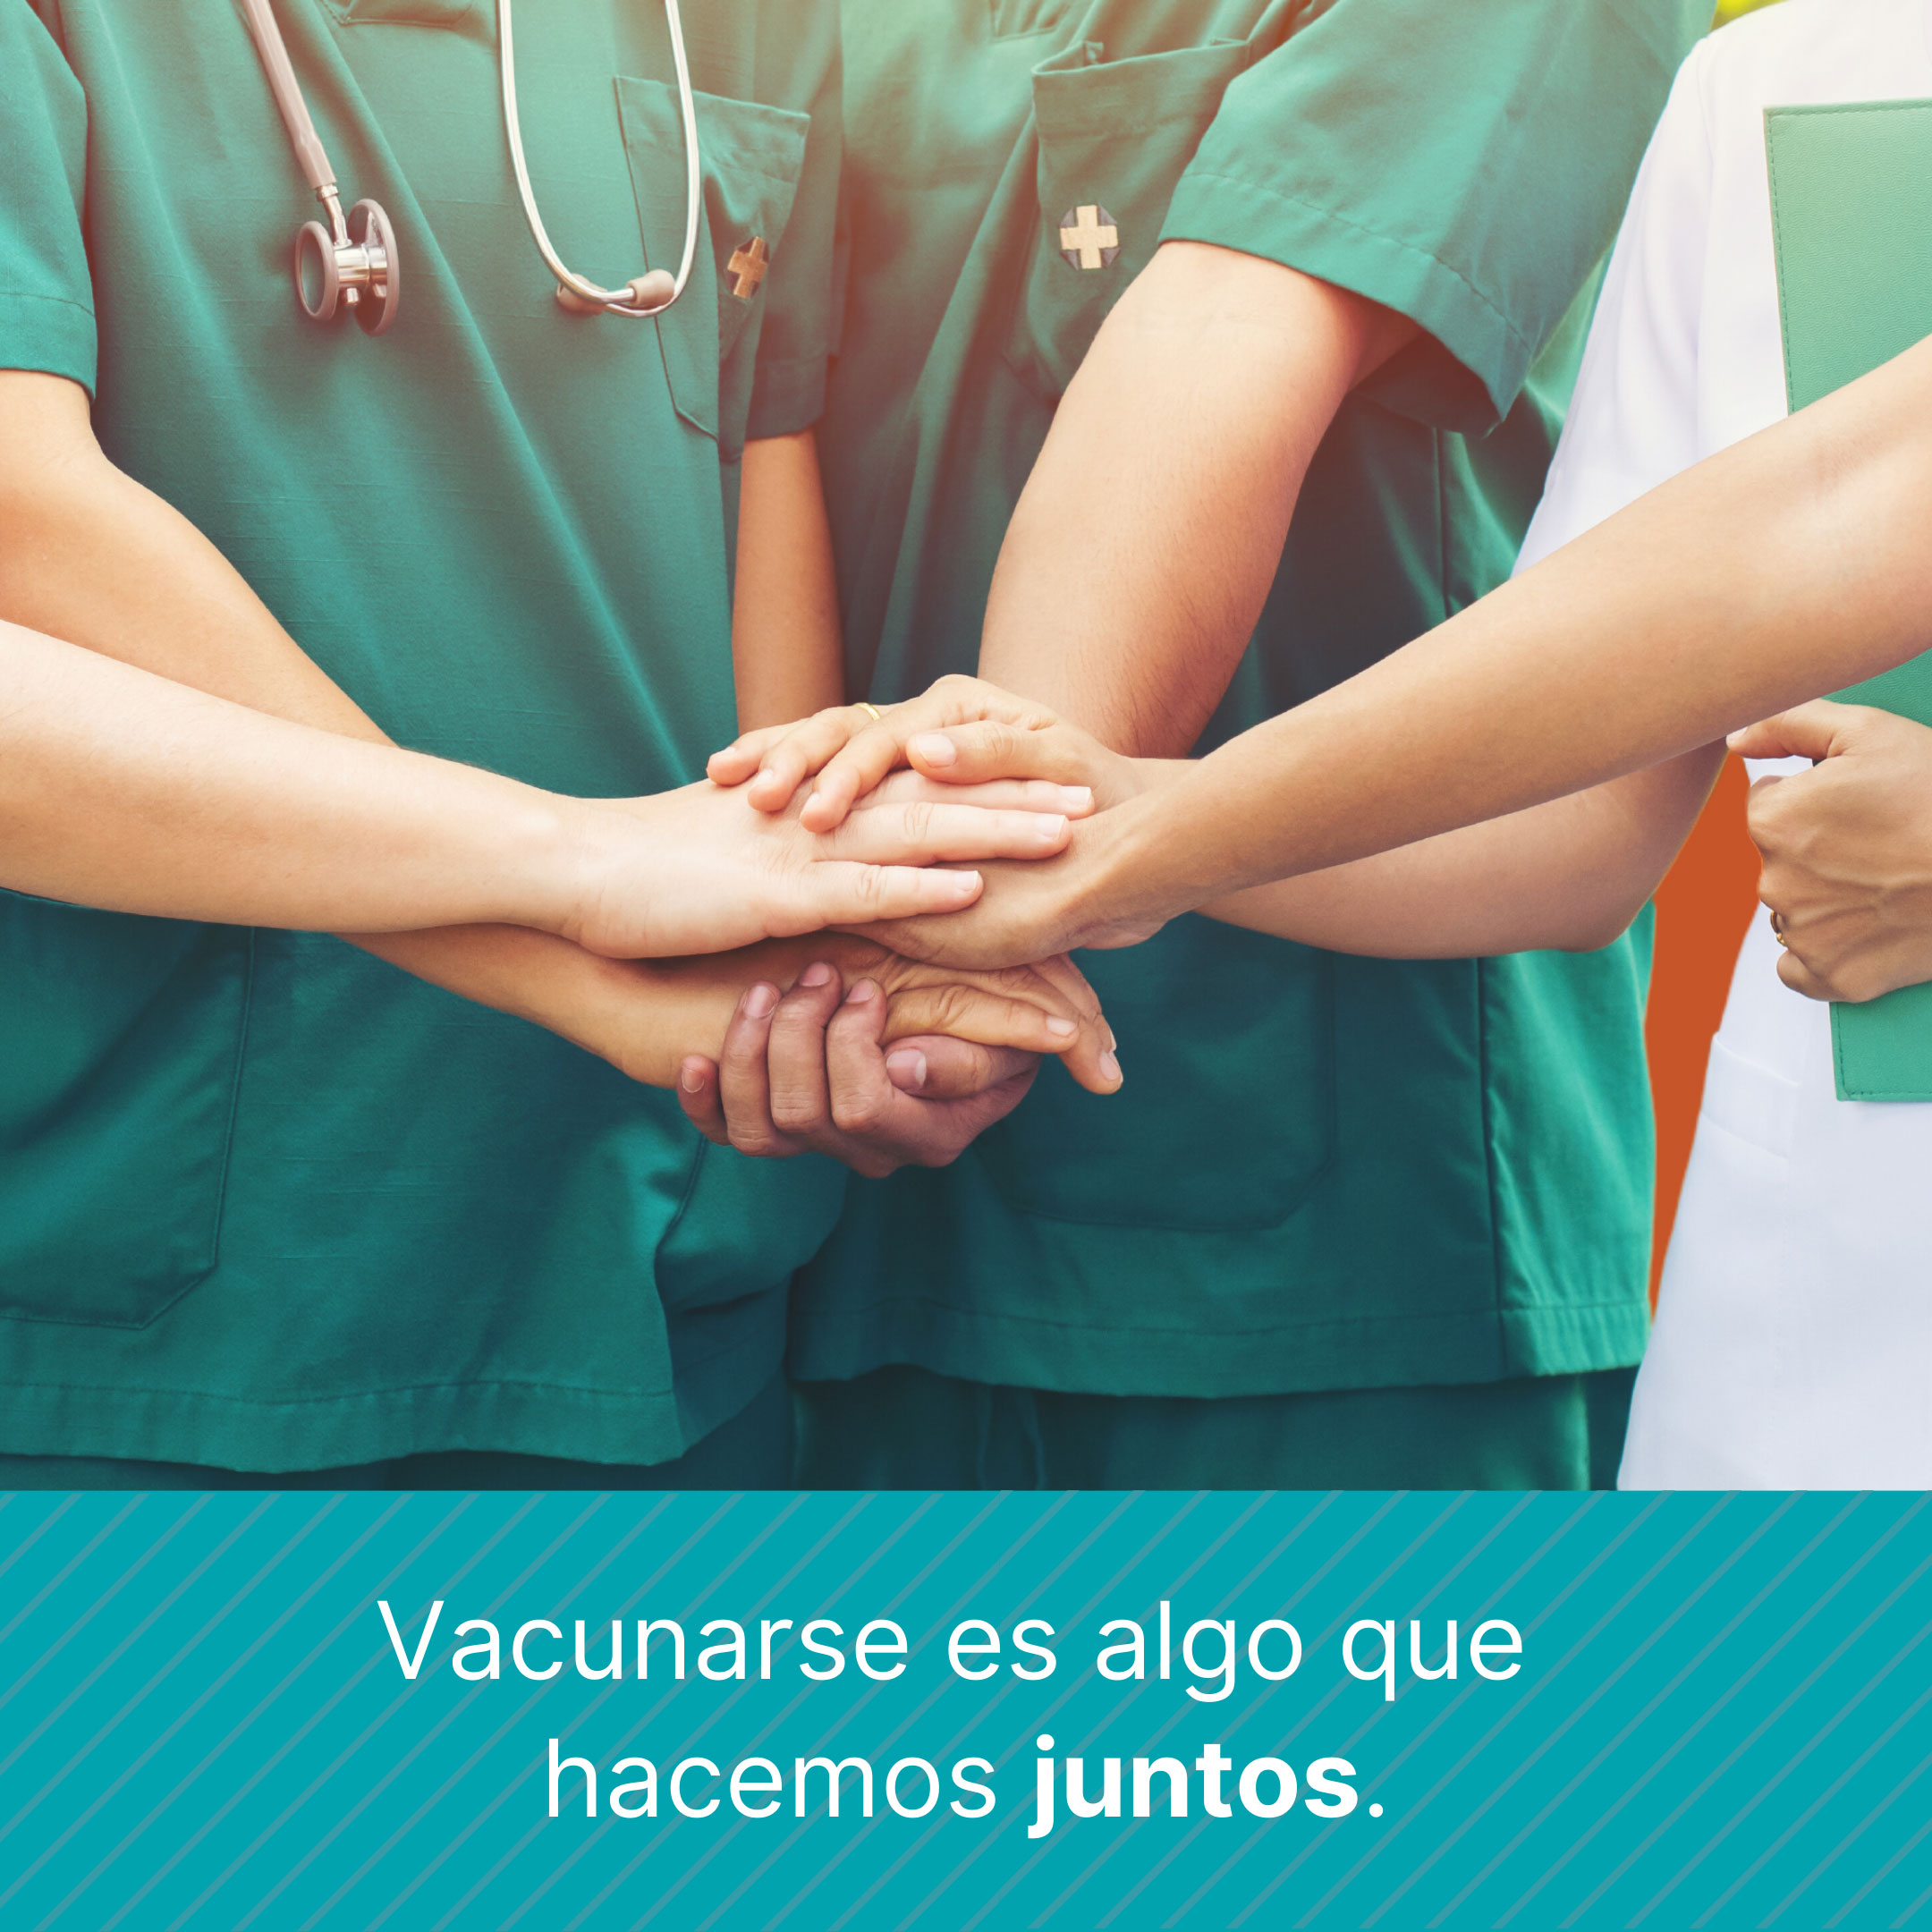 Grupo de enfermeras y doctores uniendo sus manos hacia el centro de la foto. Texto dice: Vacunarse es algo que hacemos juntos.